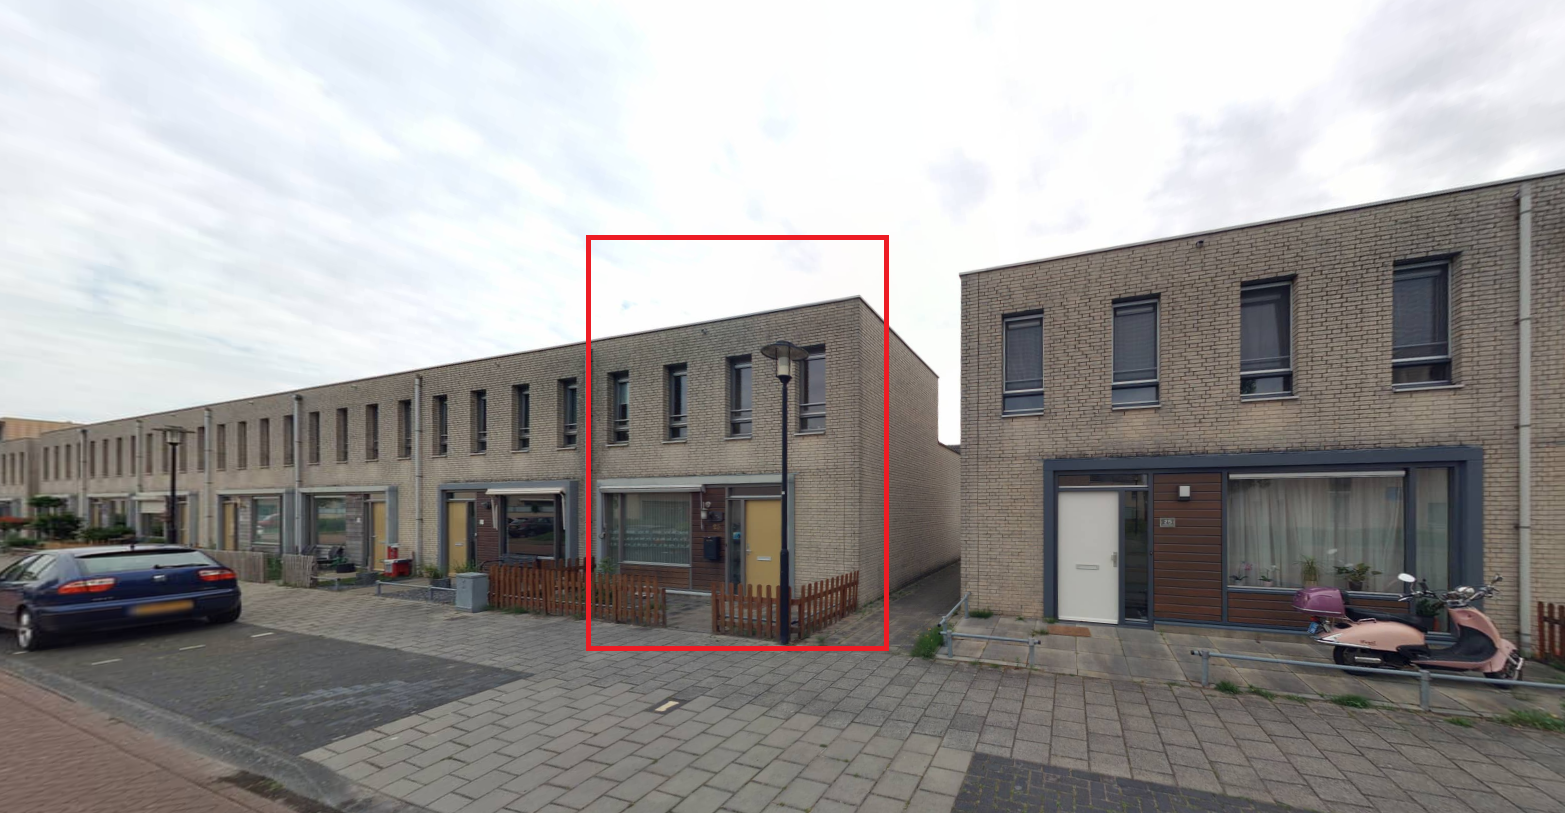 Steve Bikostraat 23, 5144 RW Waalwijk, Nederland